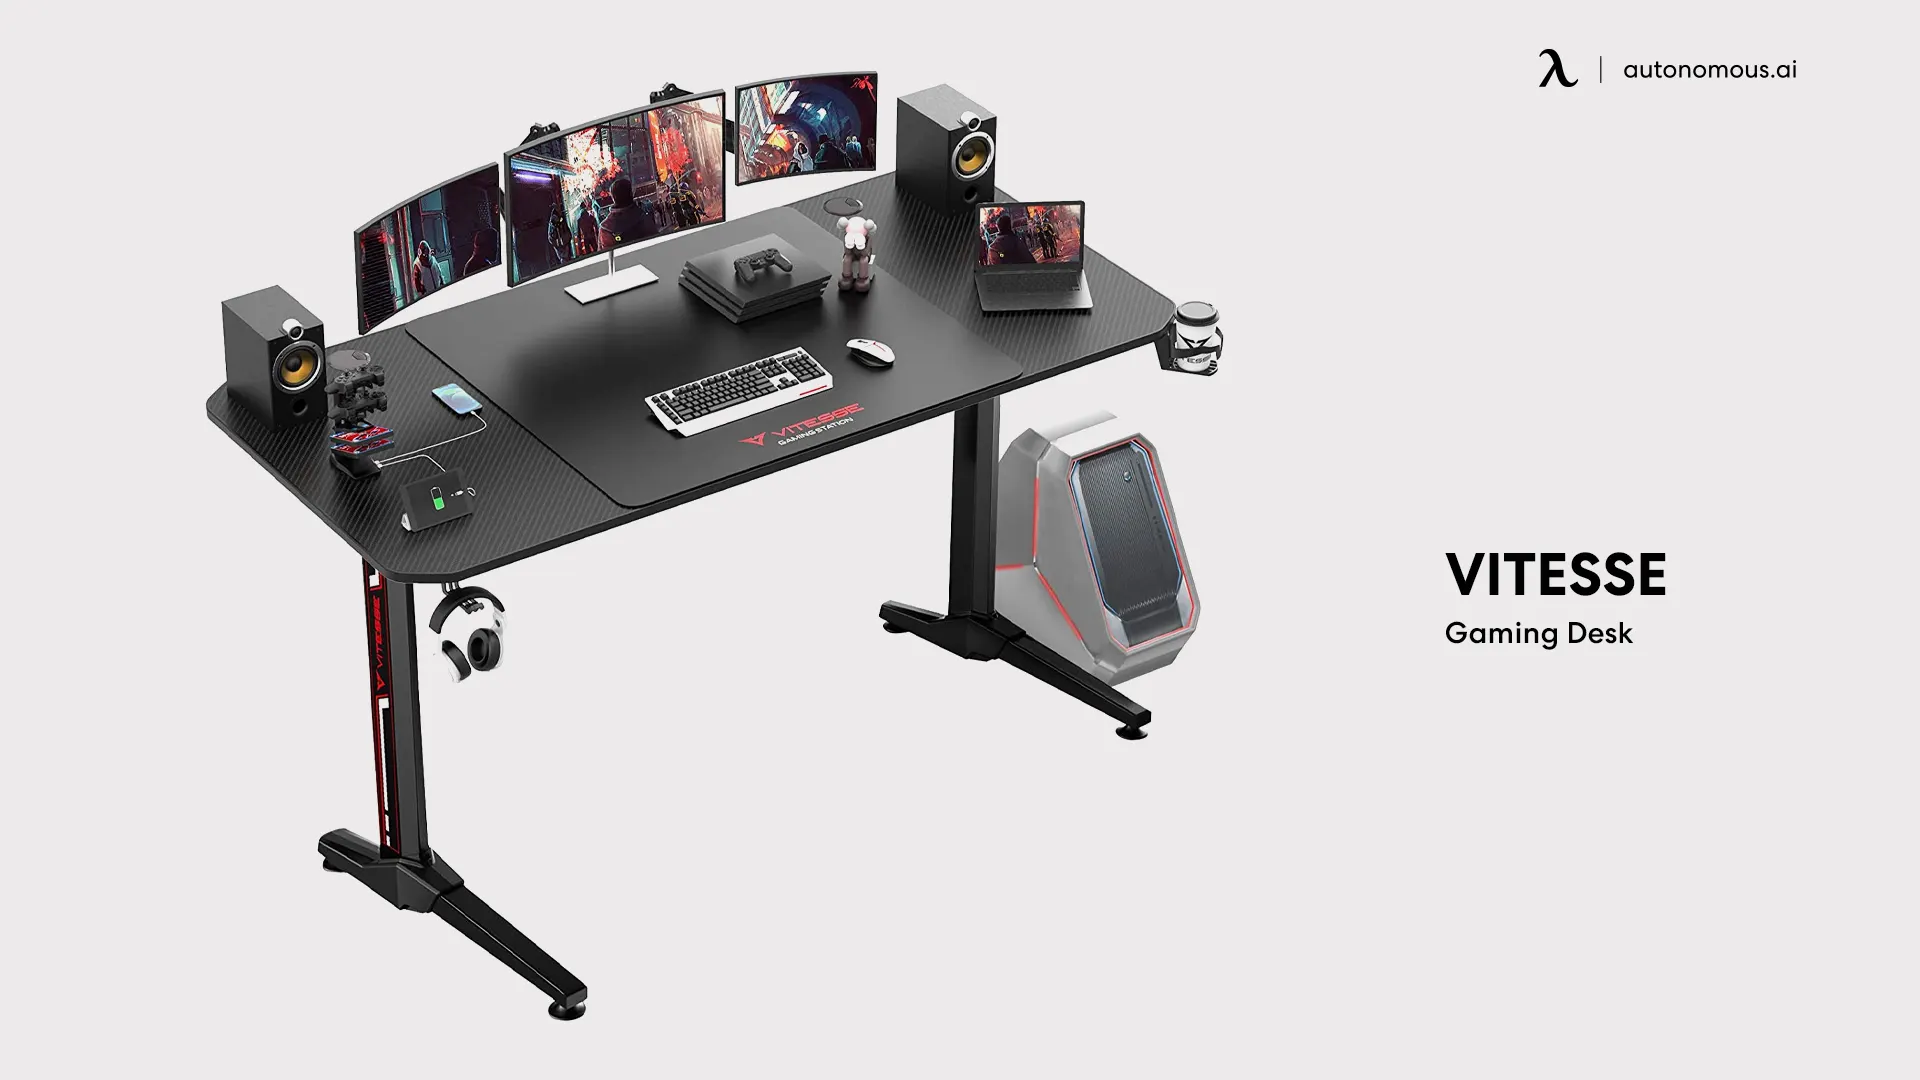 Vitesse Gaming Desk - black gaming desk